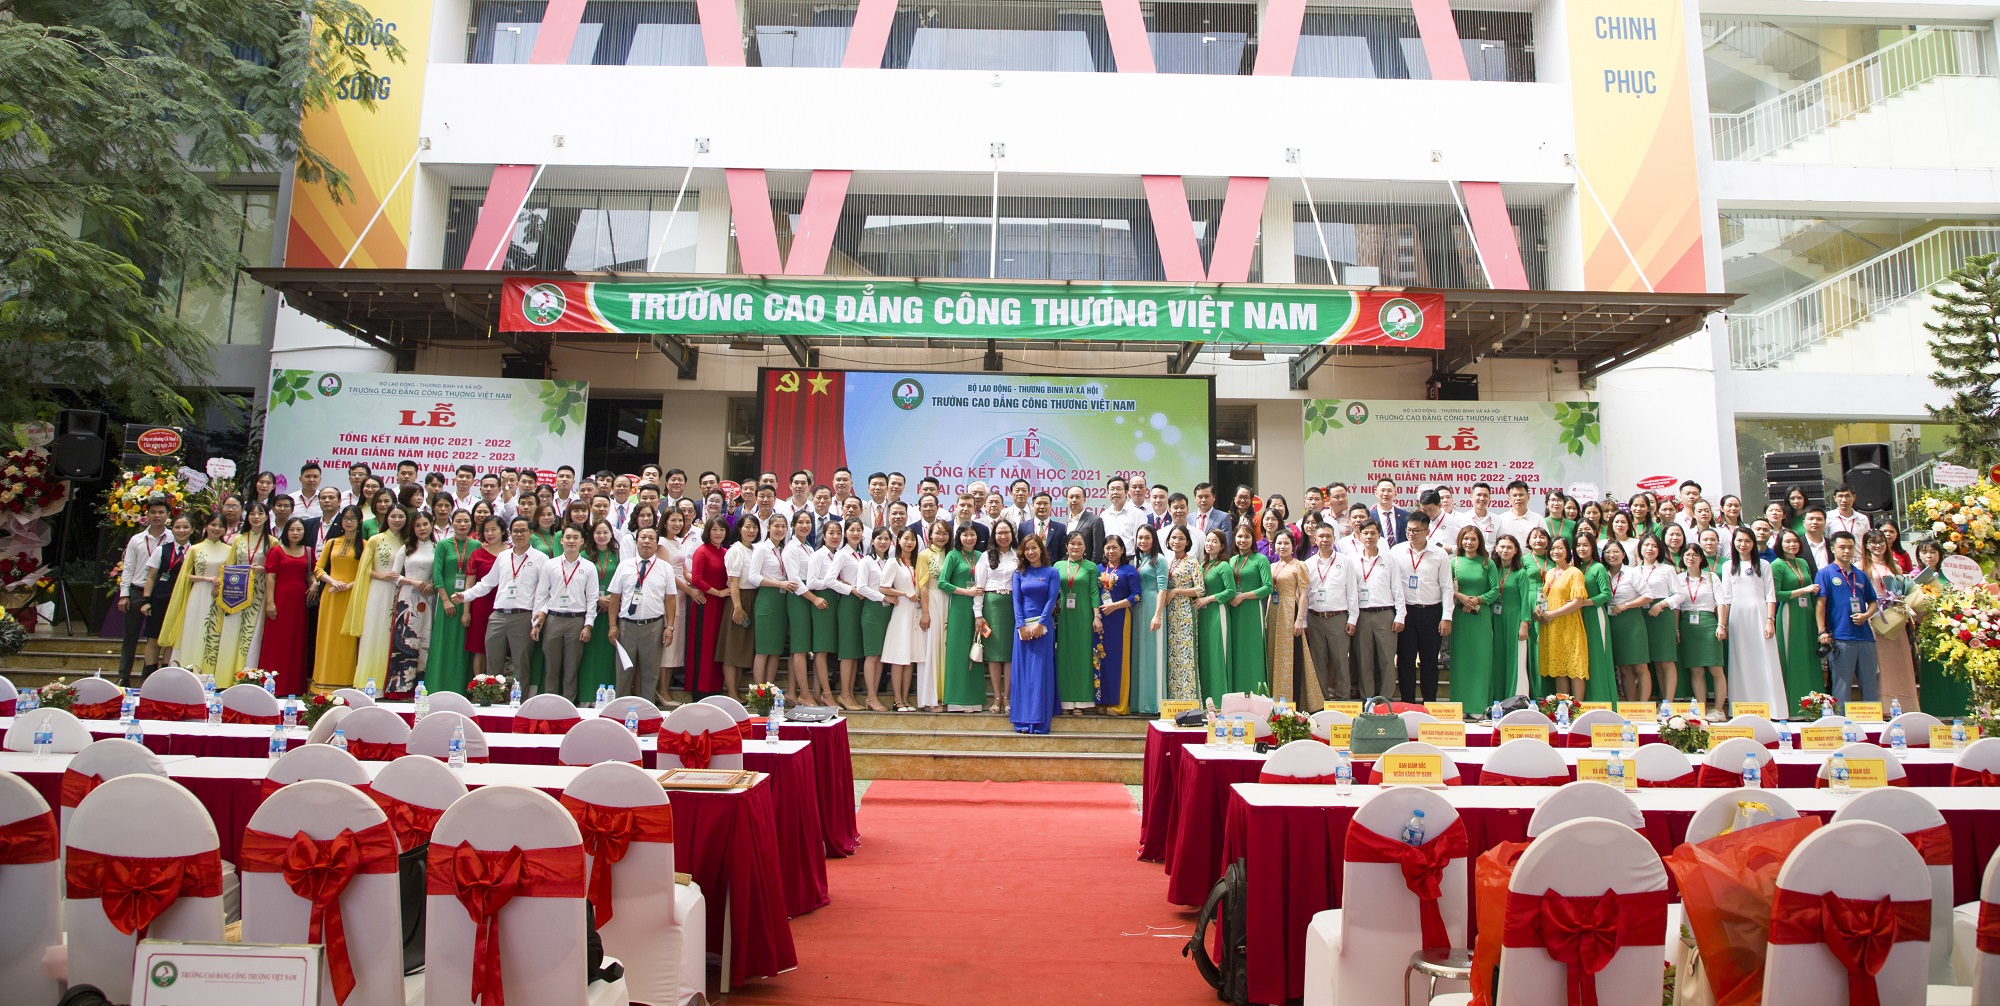 Trường Cao đẳng Công thương Việt Nam: Tiếp tục đổi mới, nỗ lực hơn nữa để hoàn thành mục tiêu